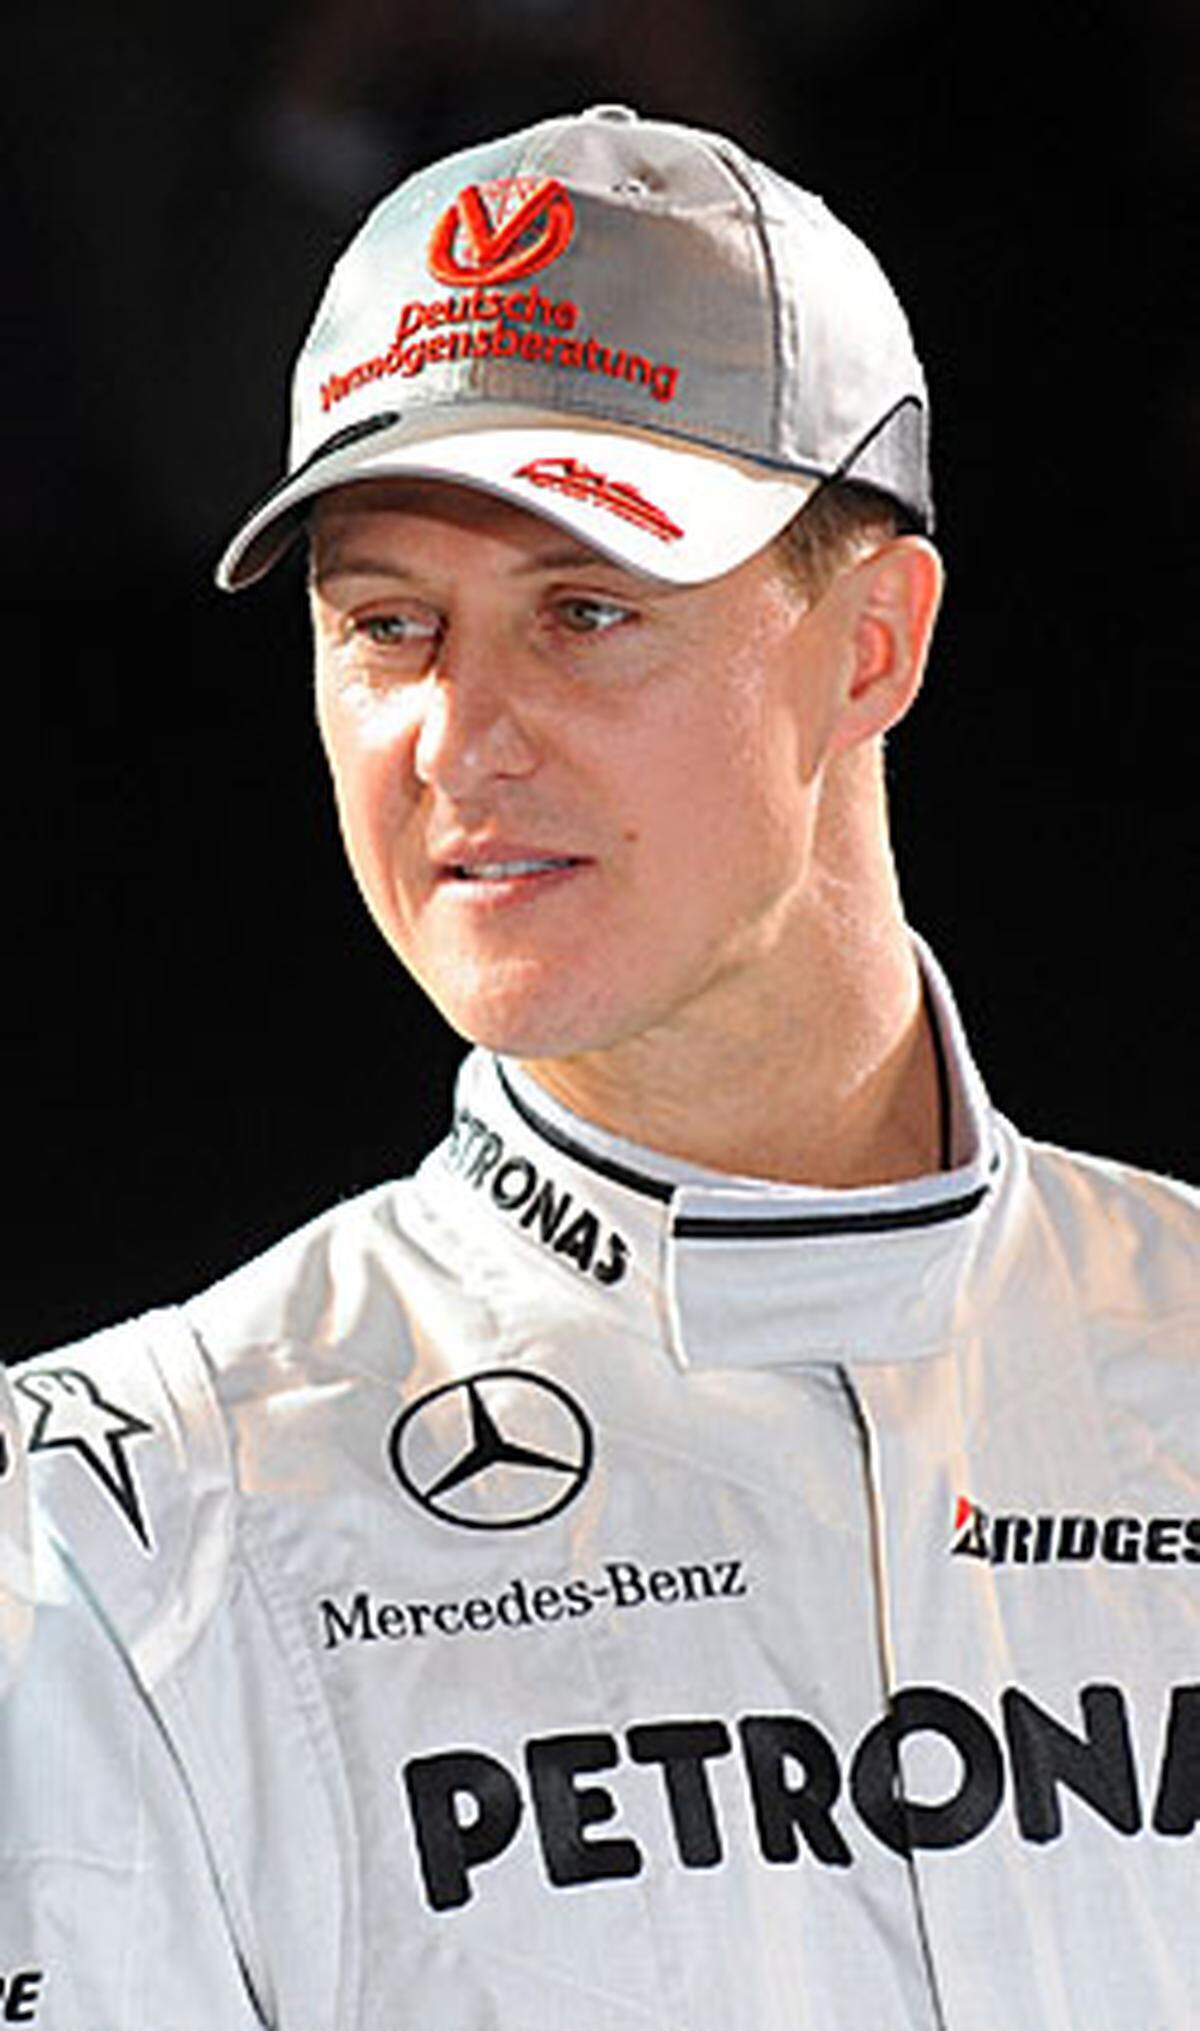 ... den sensationell zurückgekehrten Michael Schumacher. Mercedes soll ein Gehalt von sieben Millionen Euro für ein Jahr geboten und so den Rekordweltmeister ins Boot geholt haben. Die fast noch größere Überraschung: Schumacher plant in der Formel 1 für drei weitere Jahre.